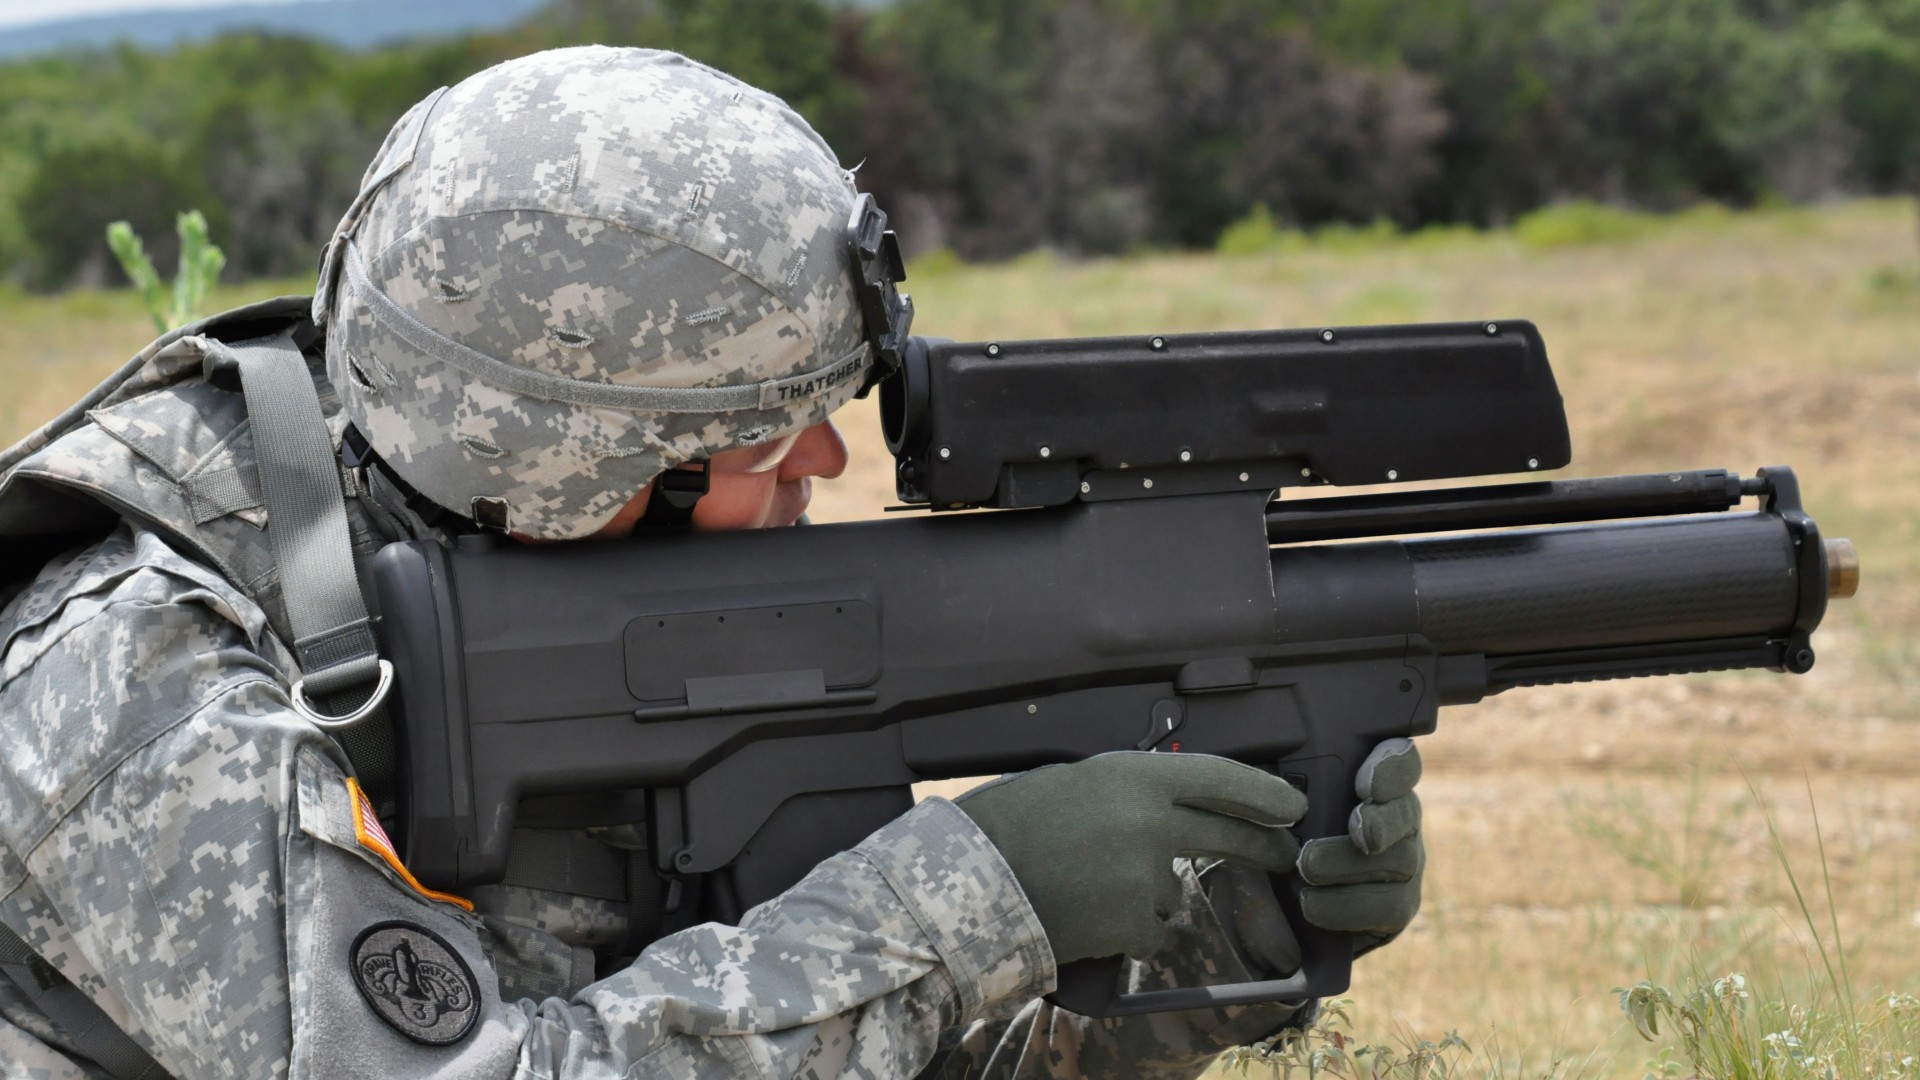 гранатомёт, солдат, современное оружие, XM25, CDTE, Punisher, grenade launcher, modern weapon, Heckler & Koch, U.S. Army, soldier (horizontal)